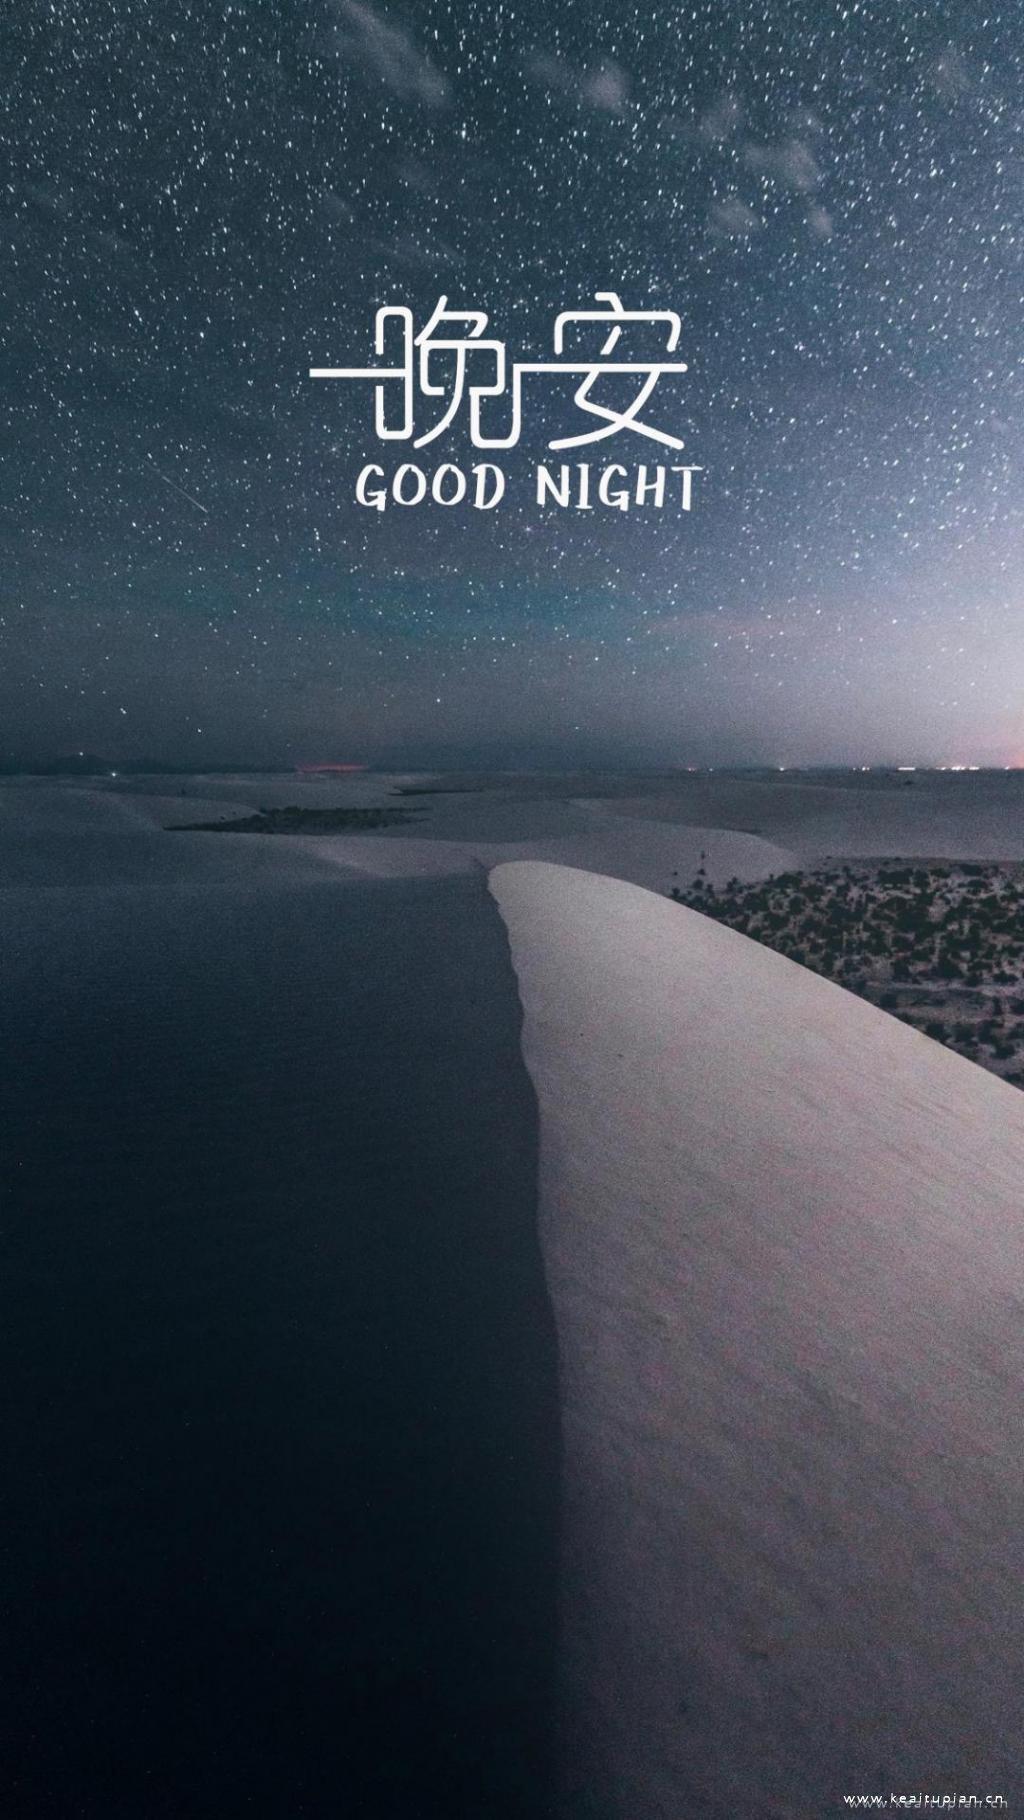 星空梦幻的晚安唯美迷人文字手机壁纸图片